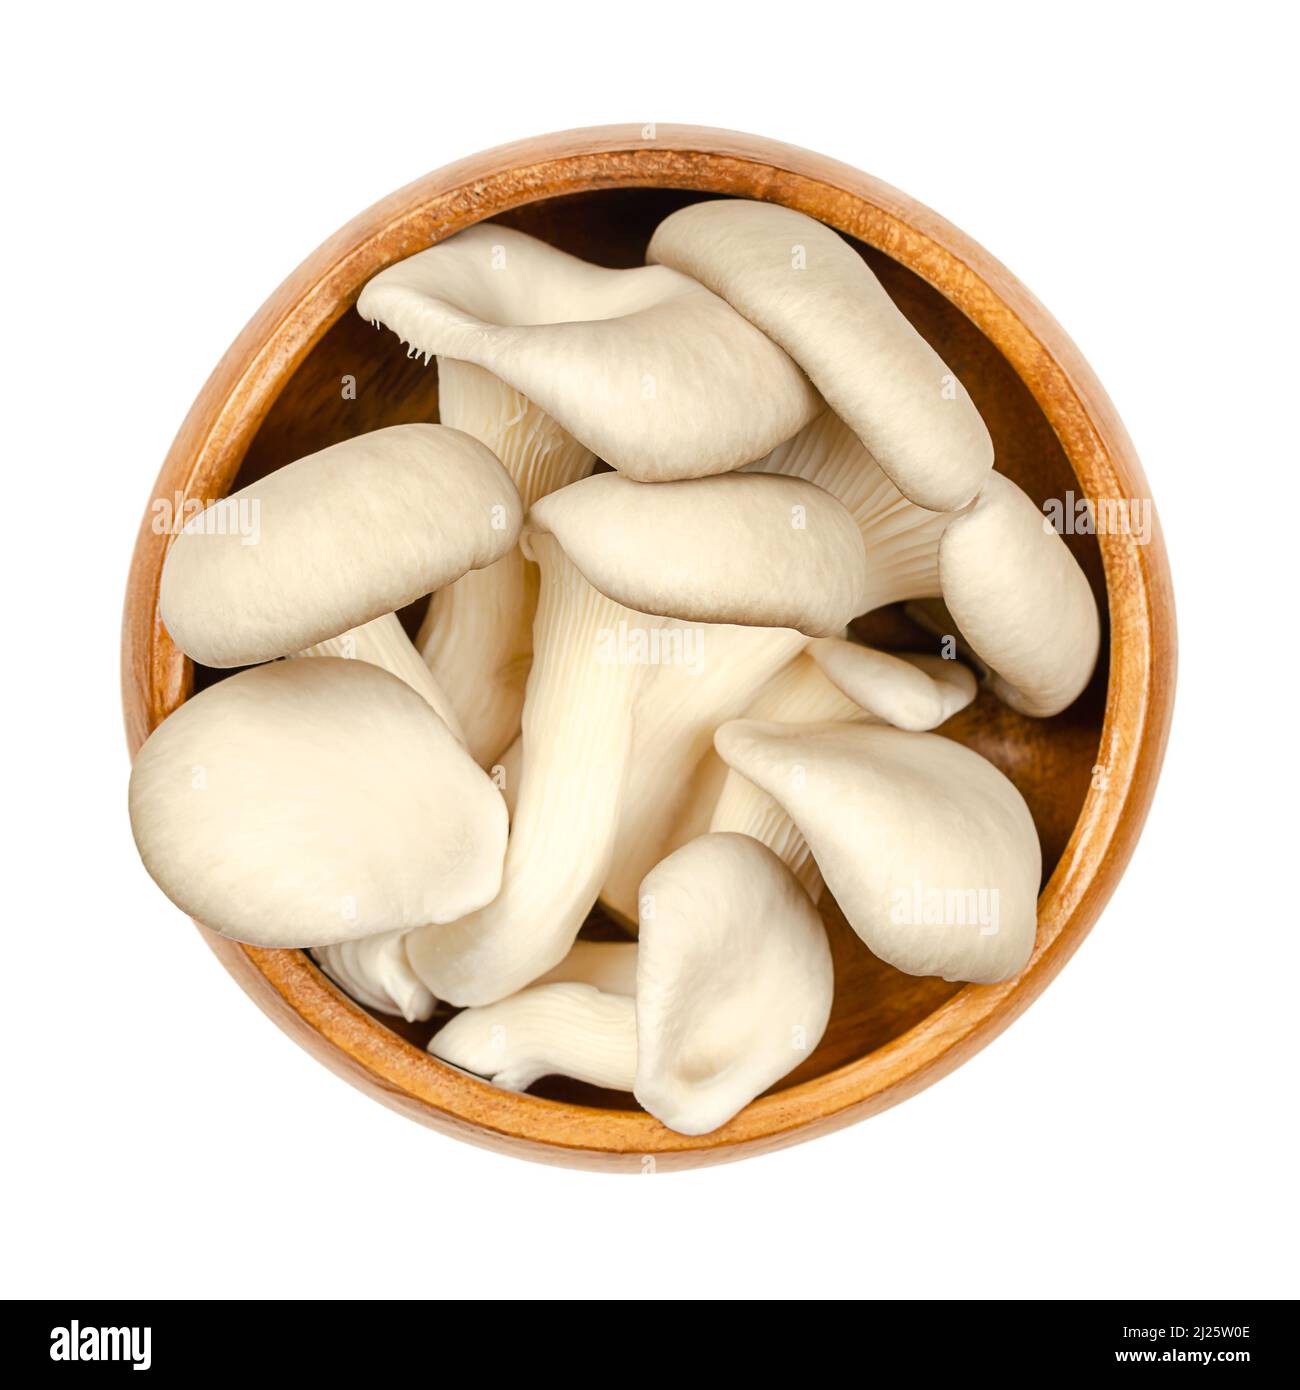 Funghi di ostrica freschi, in una ciotola di legno. Pleurotus, noto anche come abalone o funghi di albero. Uno dei funghi più coltivati e consumati. Foto Stock